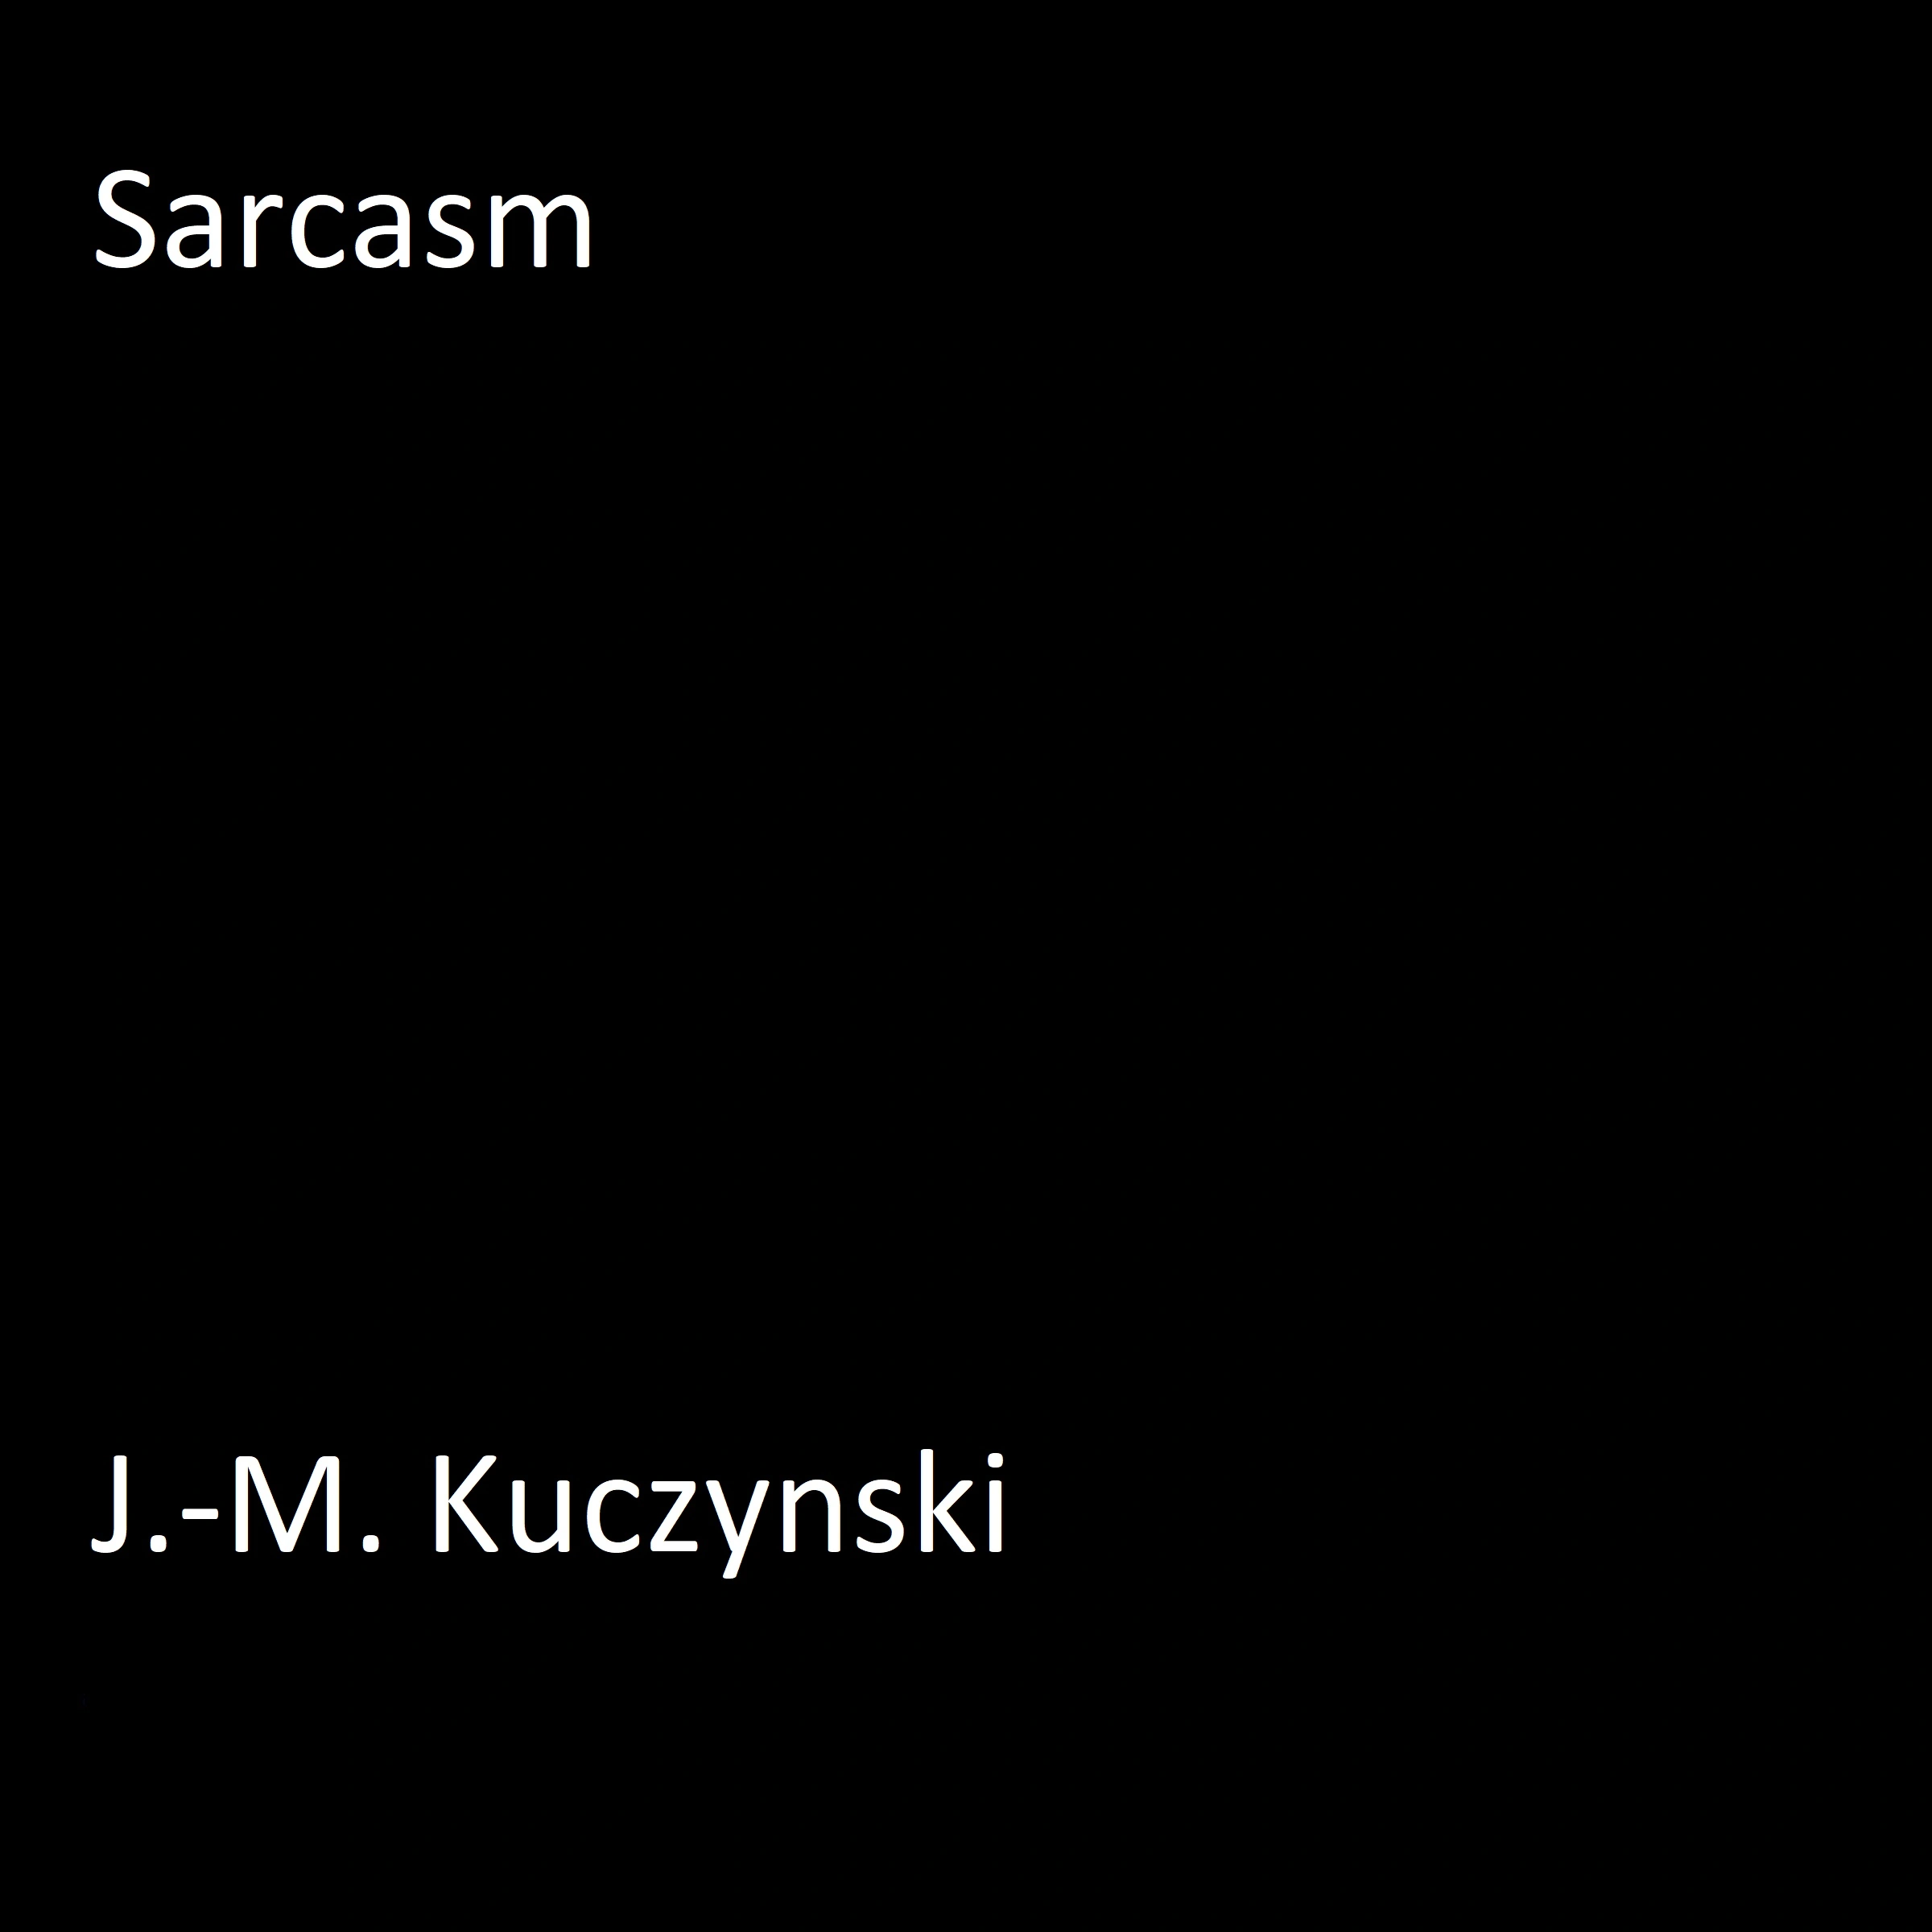 Sarcasm Audiobook by J.-M. Kuczynski